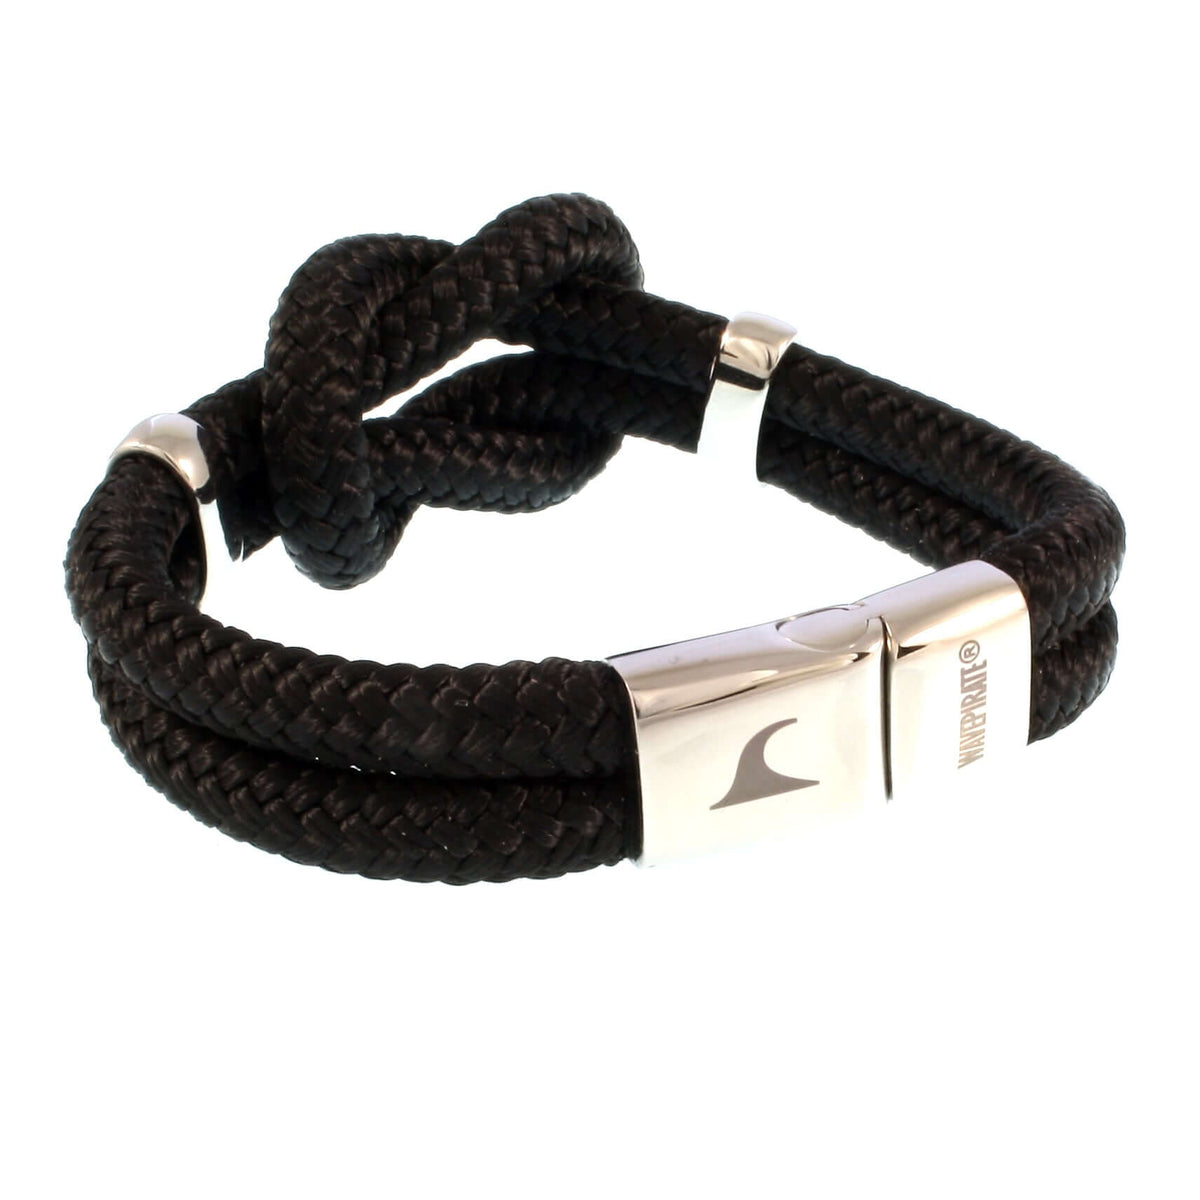 Damen-Segeltau-armband-pure-schwarz-silber-geflochten-Edelstahlverschluss-vorn-wavepirate-shop-st